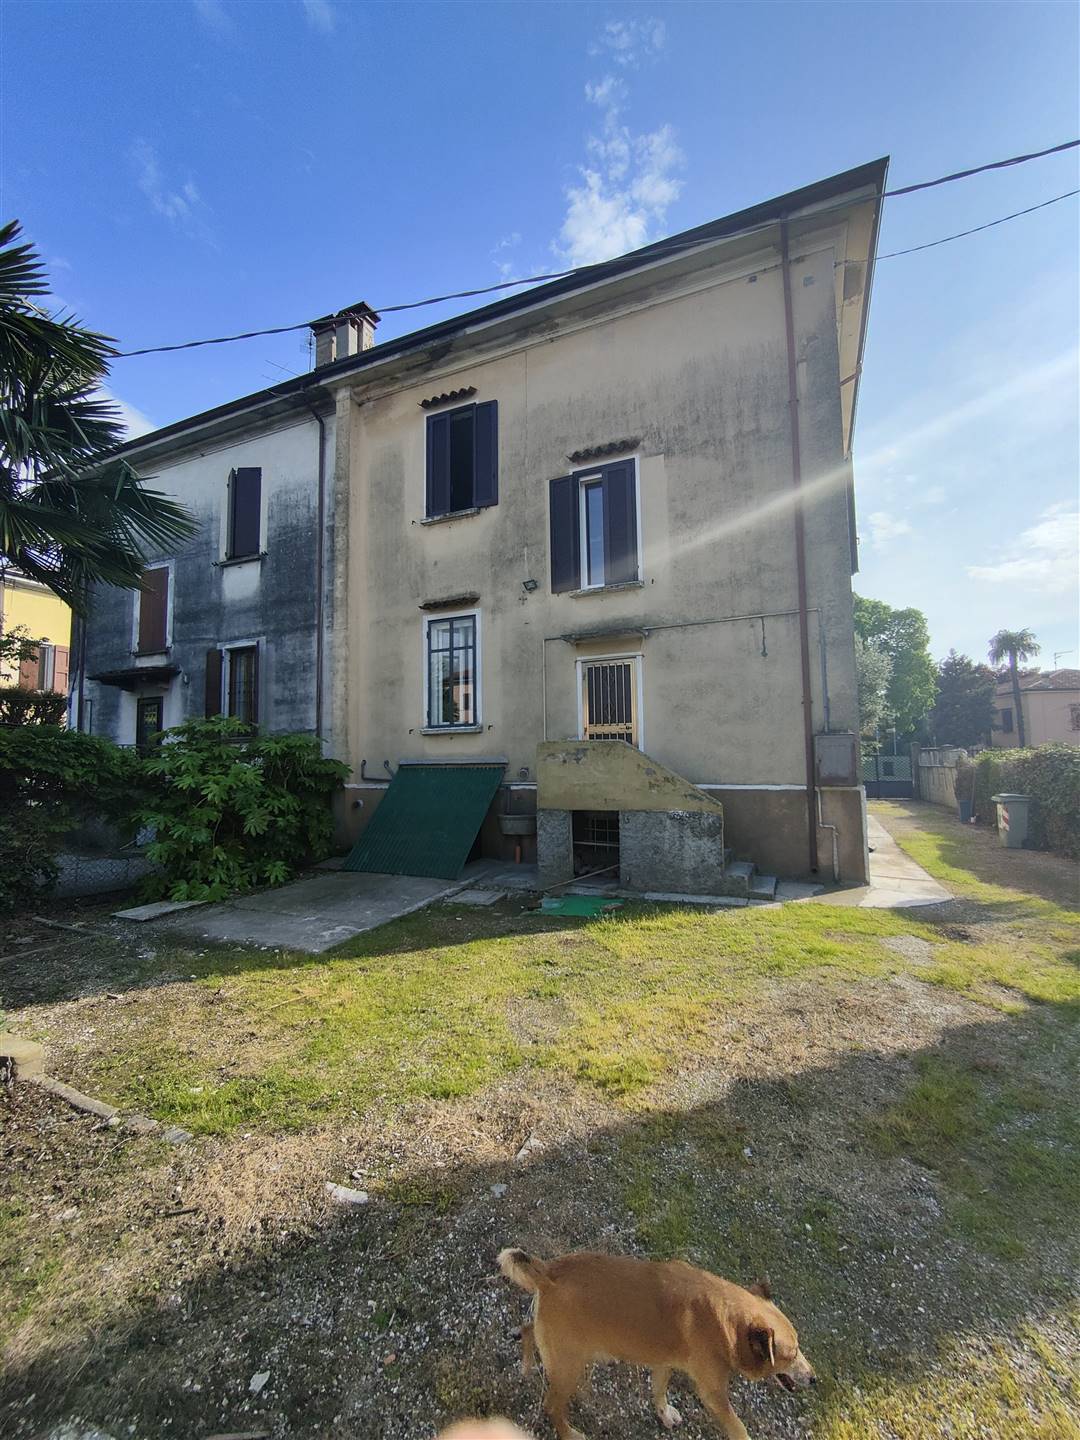 Villa Bifamiliare in vendita a Ostiglia, 8 locali, prezzo € 155.000 | PortaleAgenzieImmobiliari.it